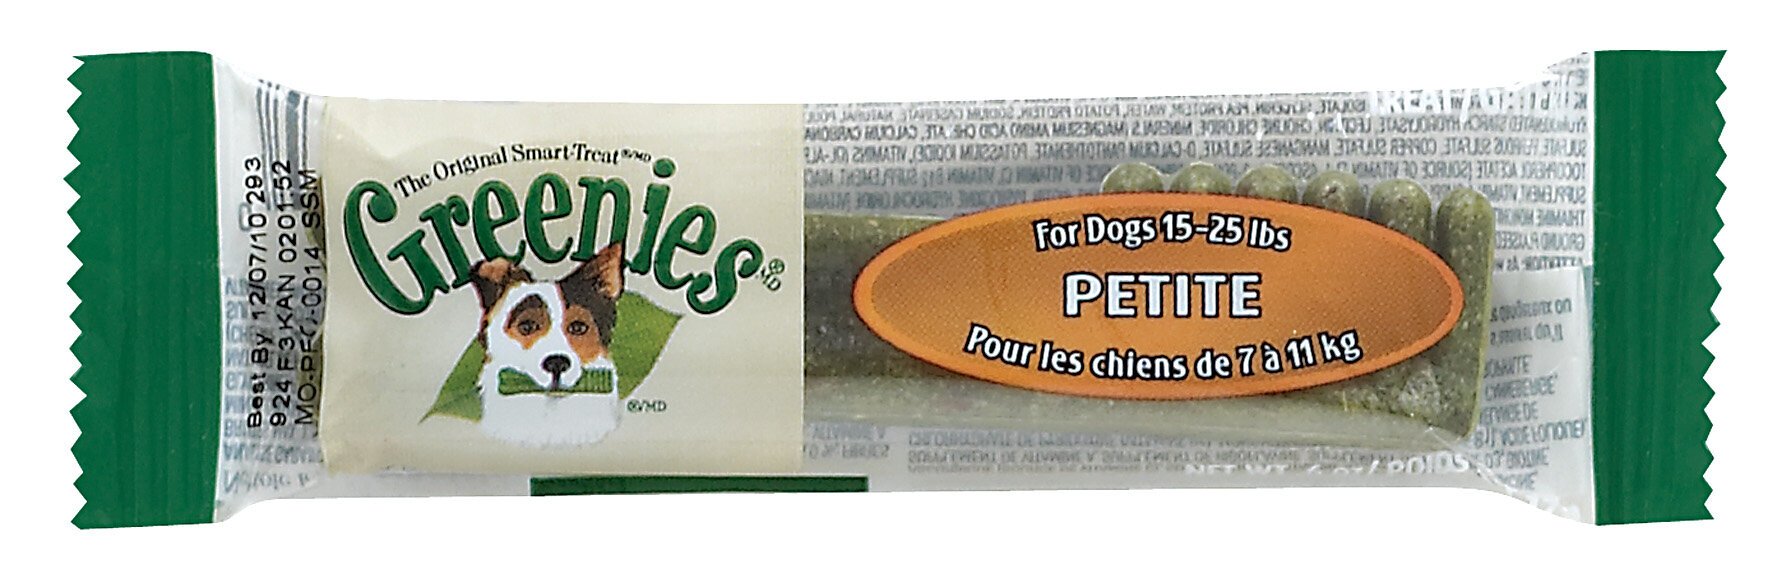 Greenies Canine Petite Dog Treats NZ Pet.kiwi Greenies